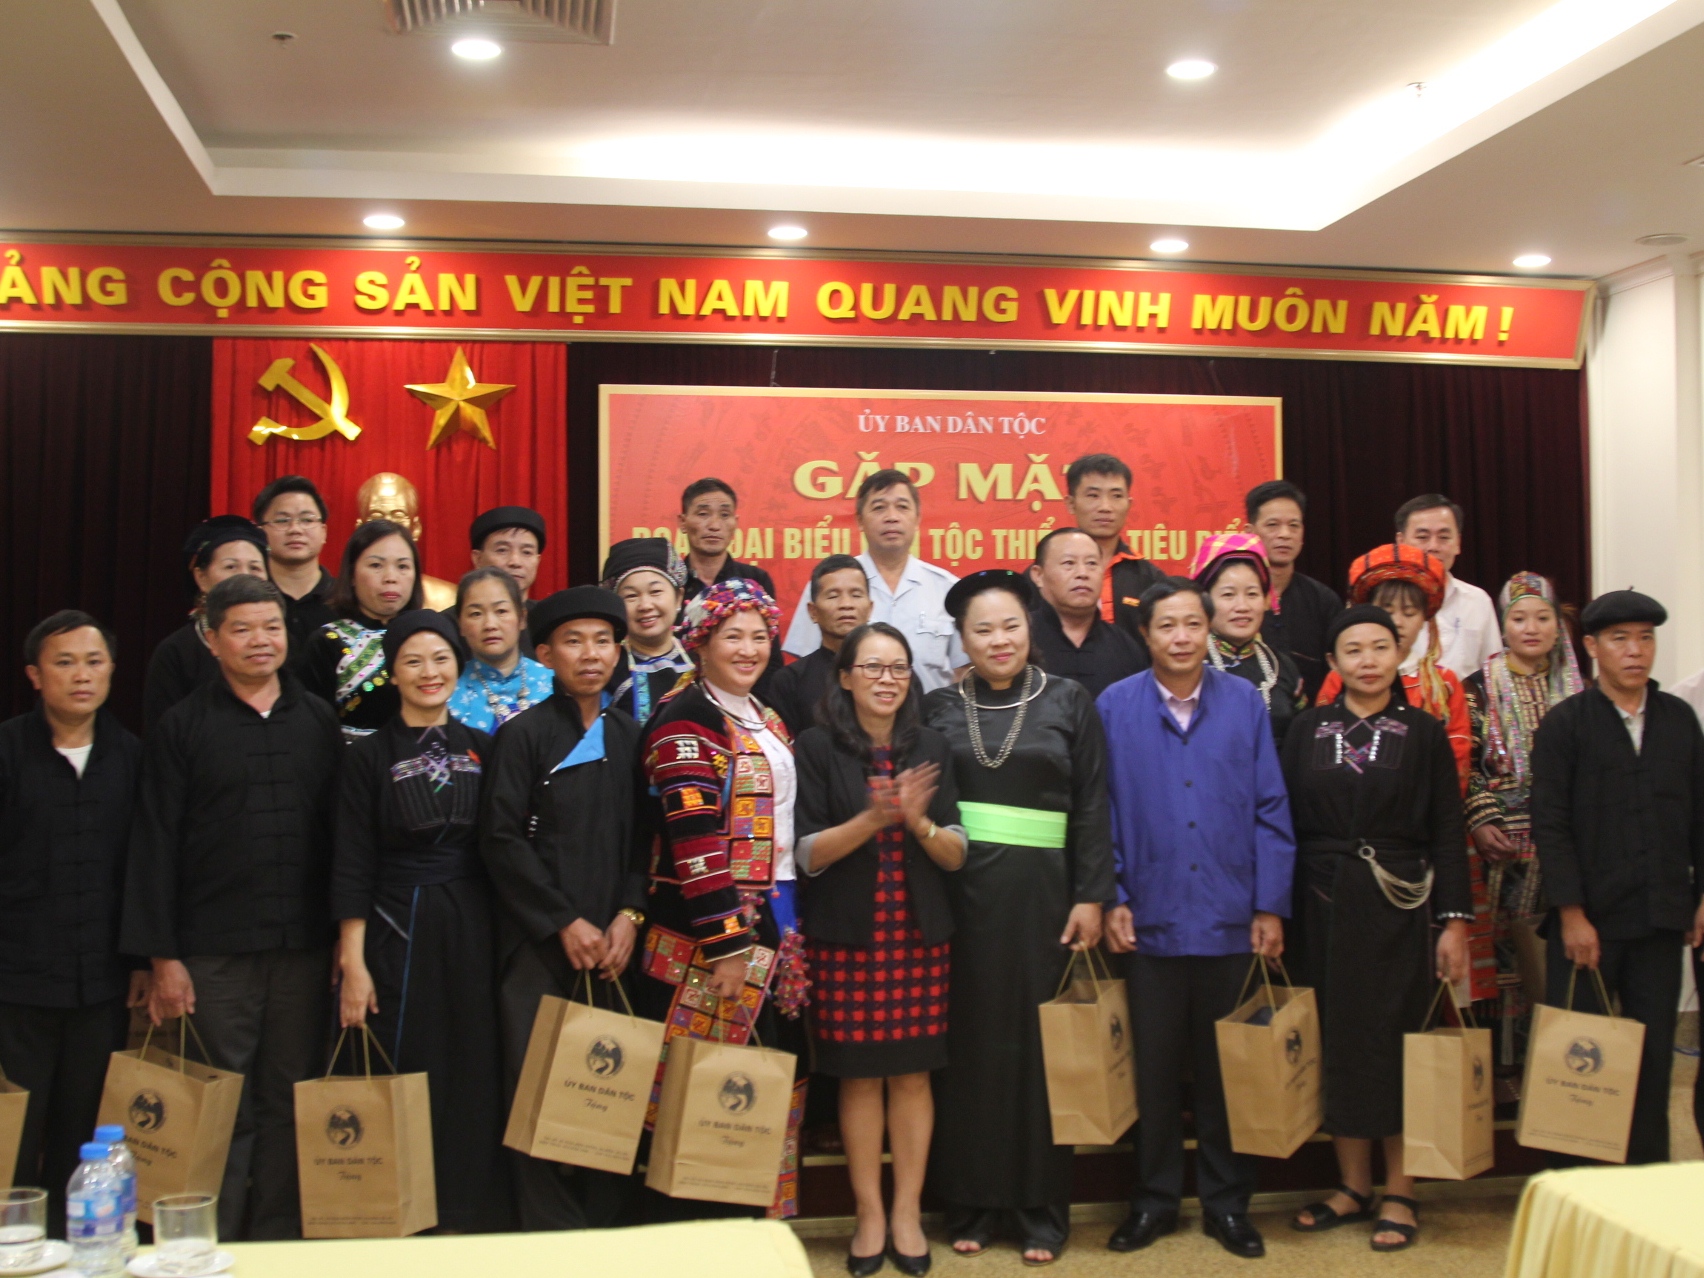 Thứ trưởng, Phó Chủ nhiệm Hoàng Thị Hạnh tặng quà lưu niệm của UBDT cho Đoàn đại biểu